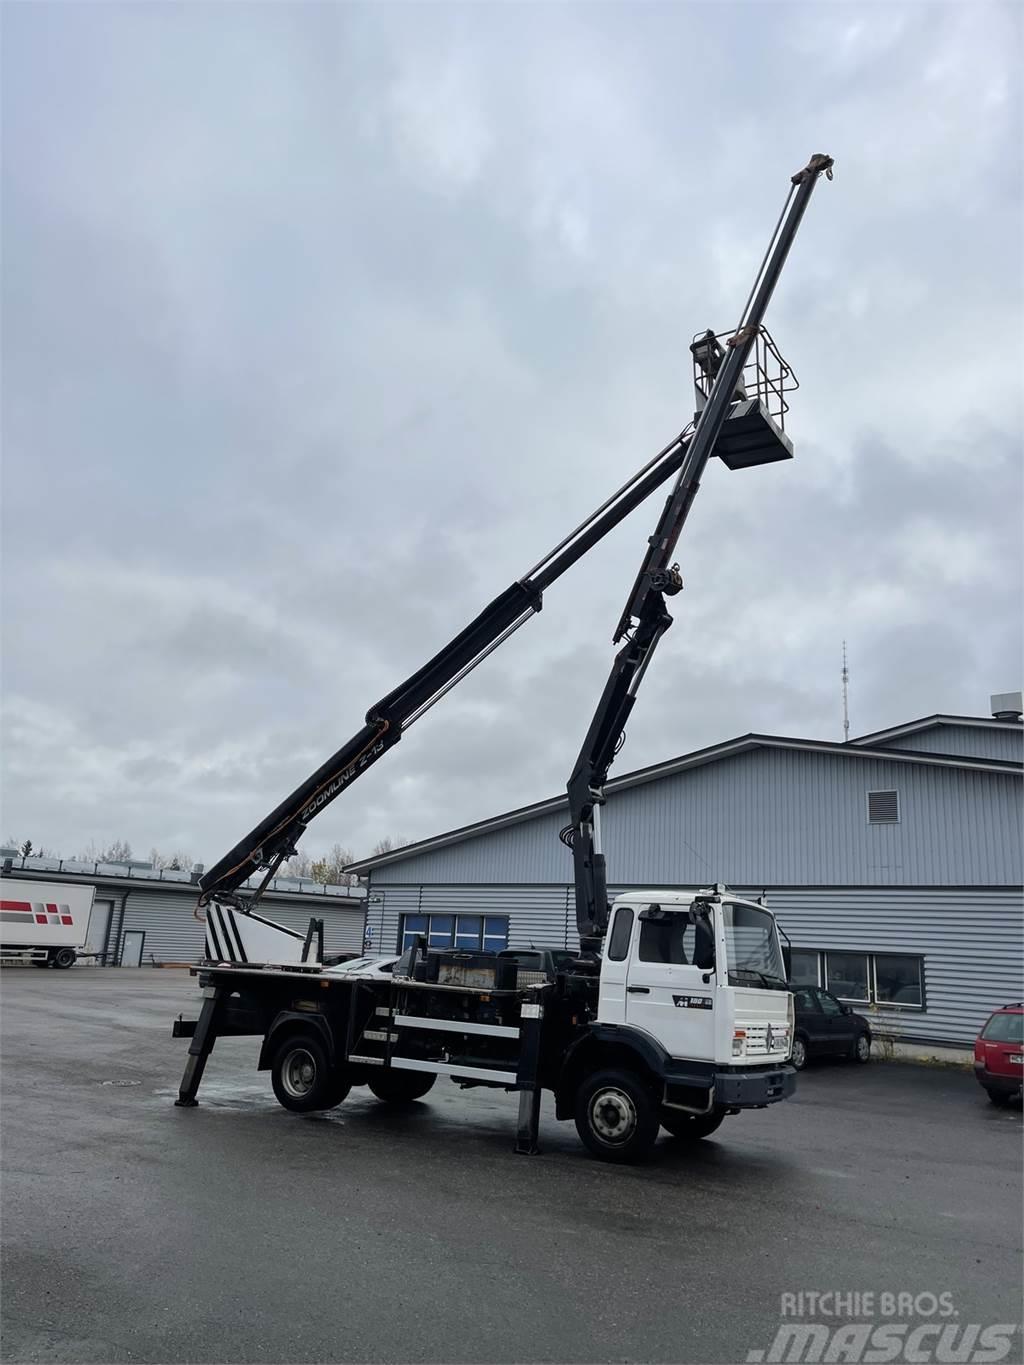 Renault - Truck mounted cranes